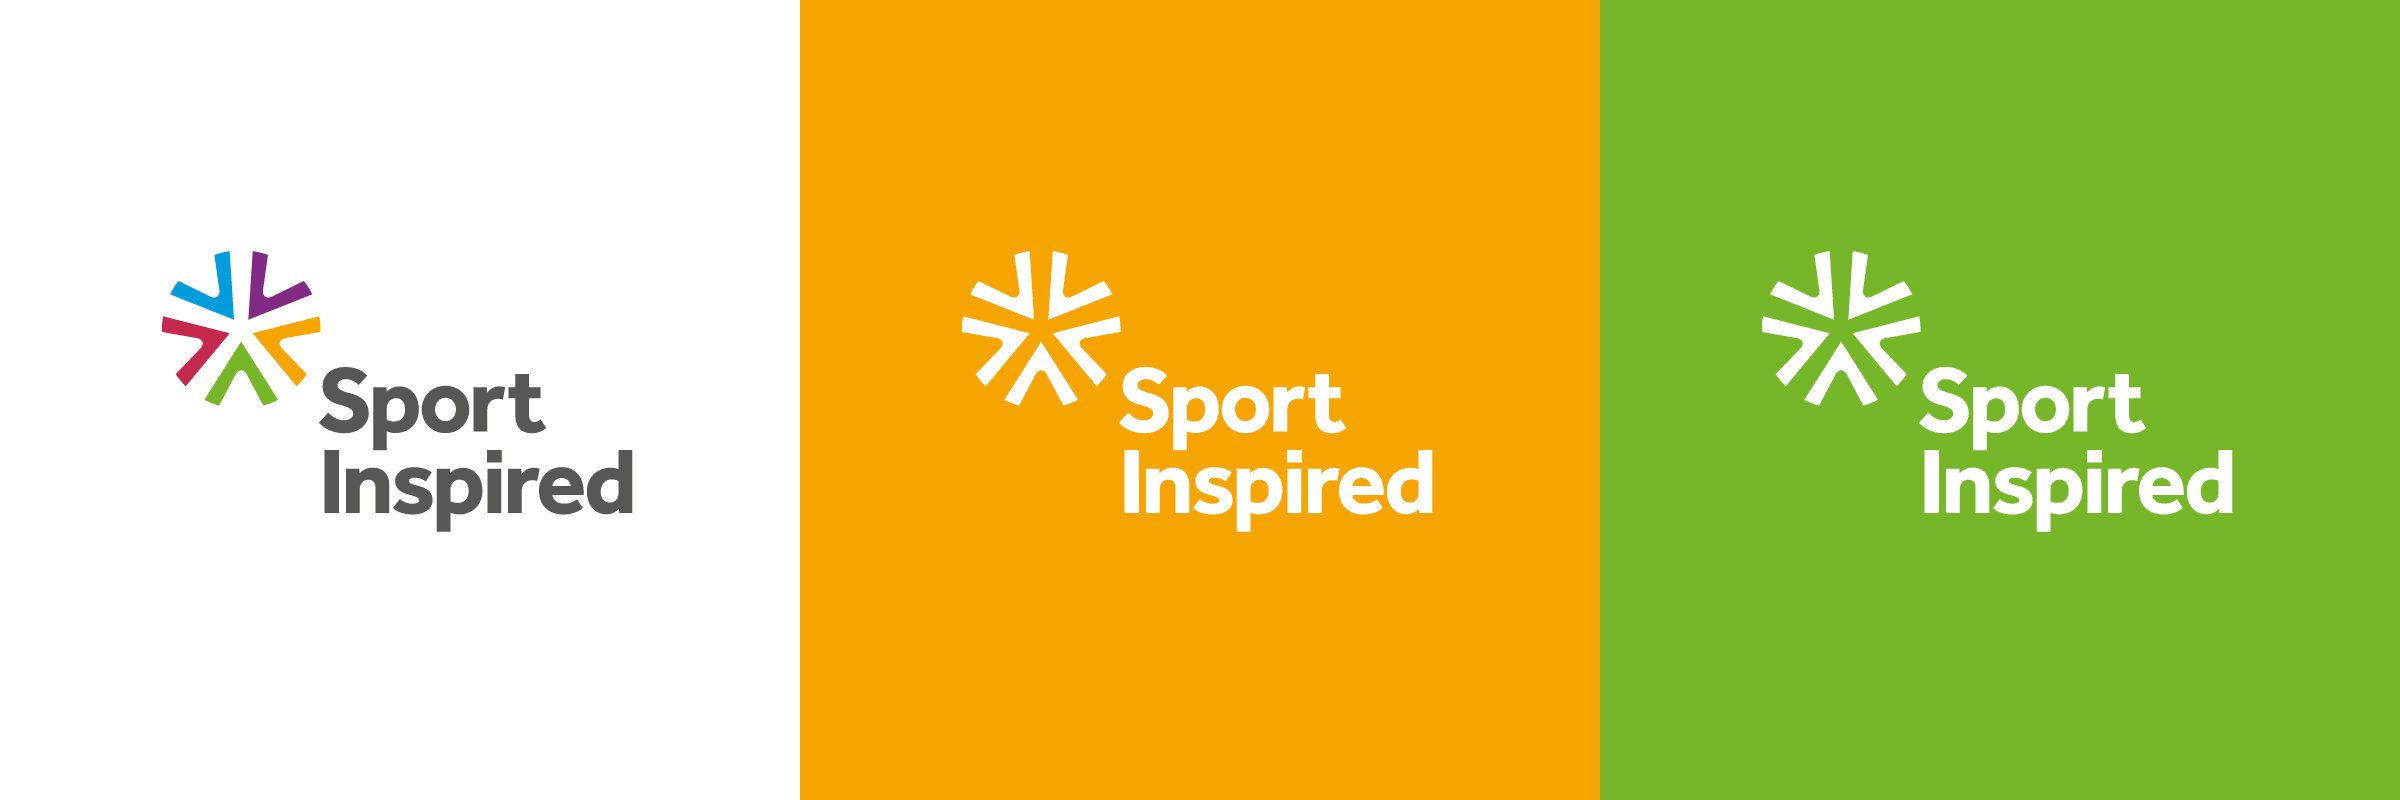 Sport Inspired